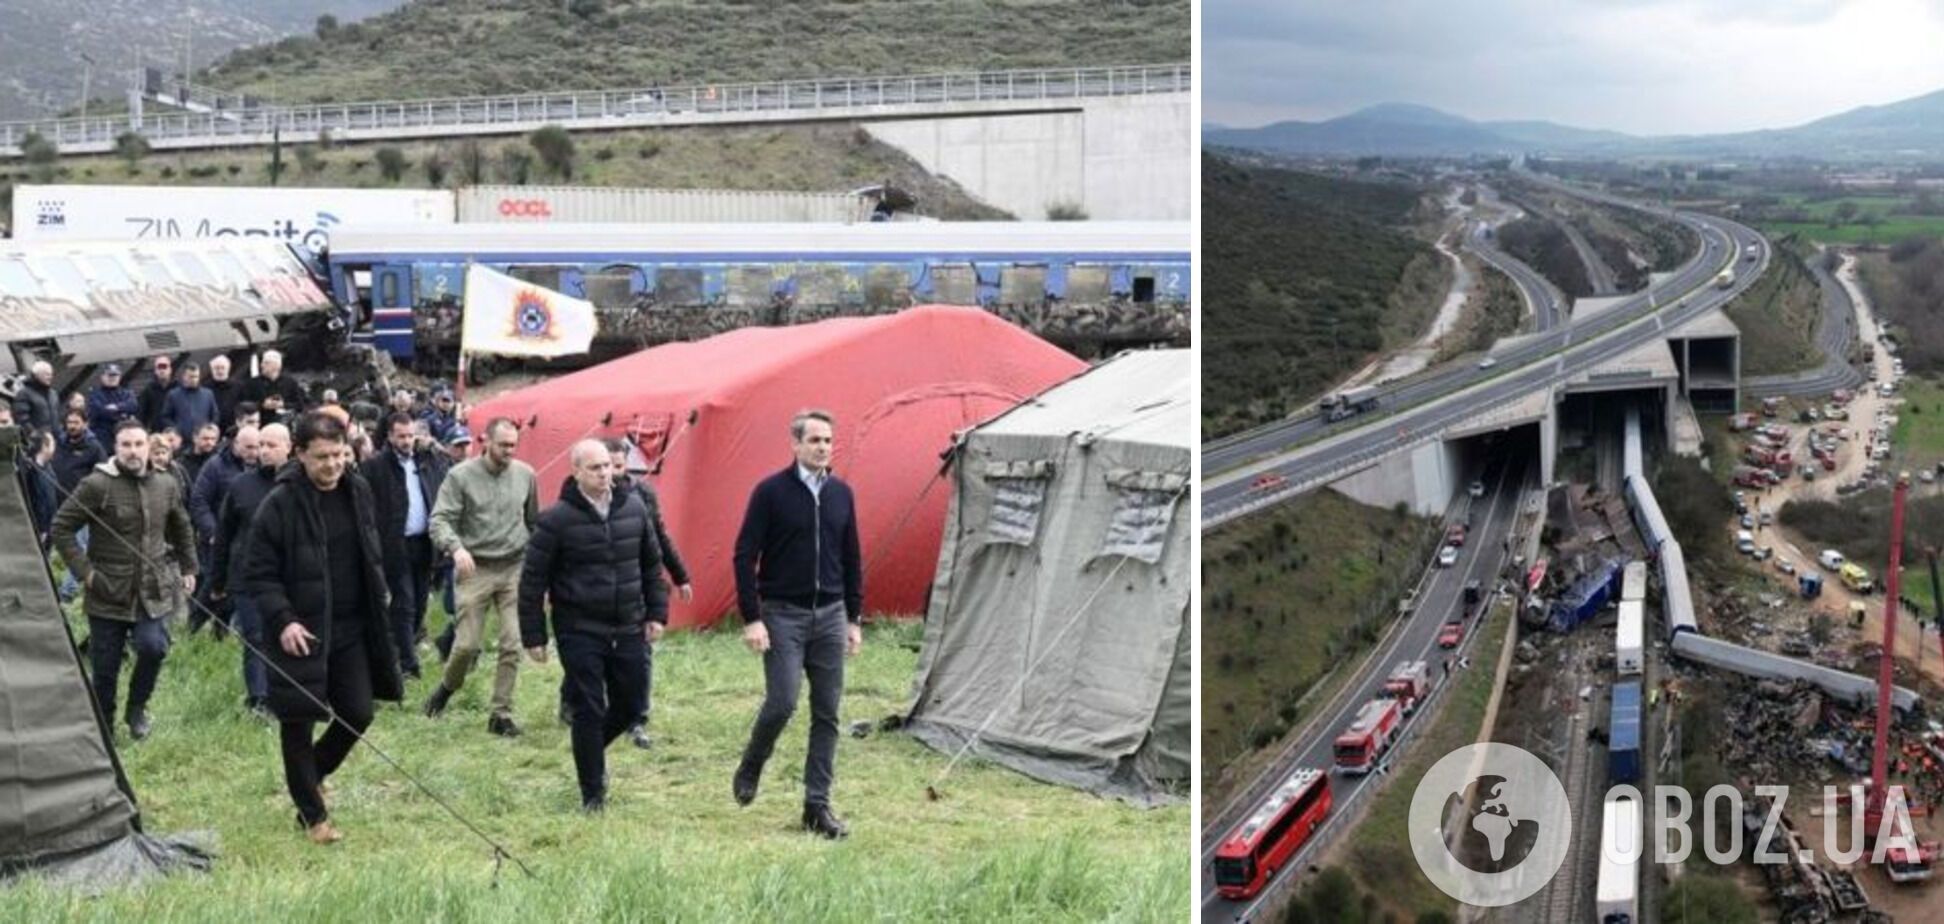 В Греции назвали причину столкновения поездов, в результате которого погибли 43 человека: в стране объявлен траур. Фото